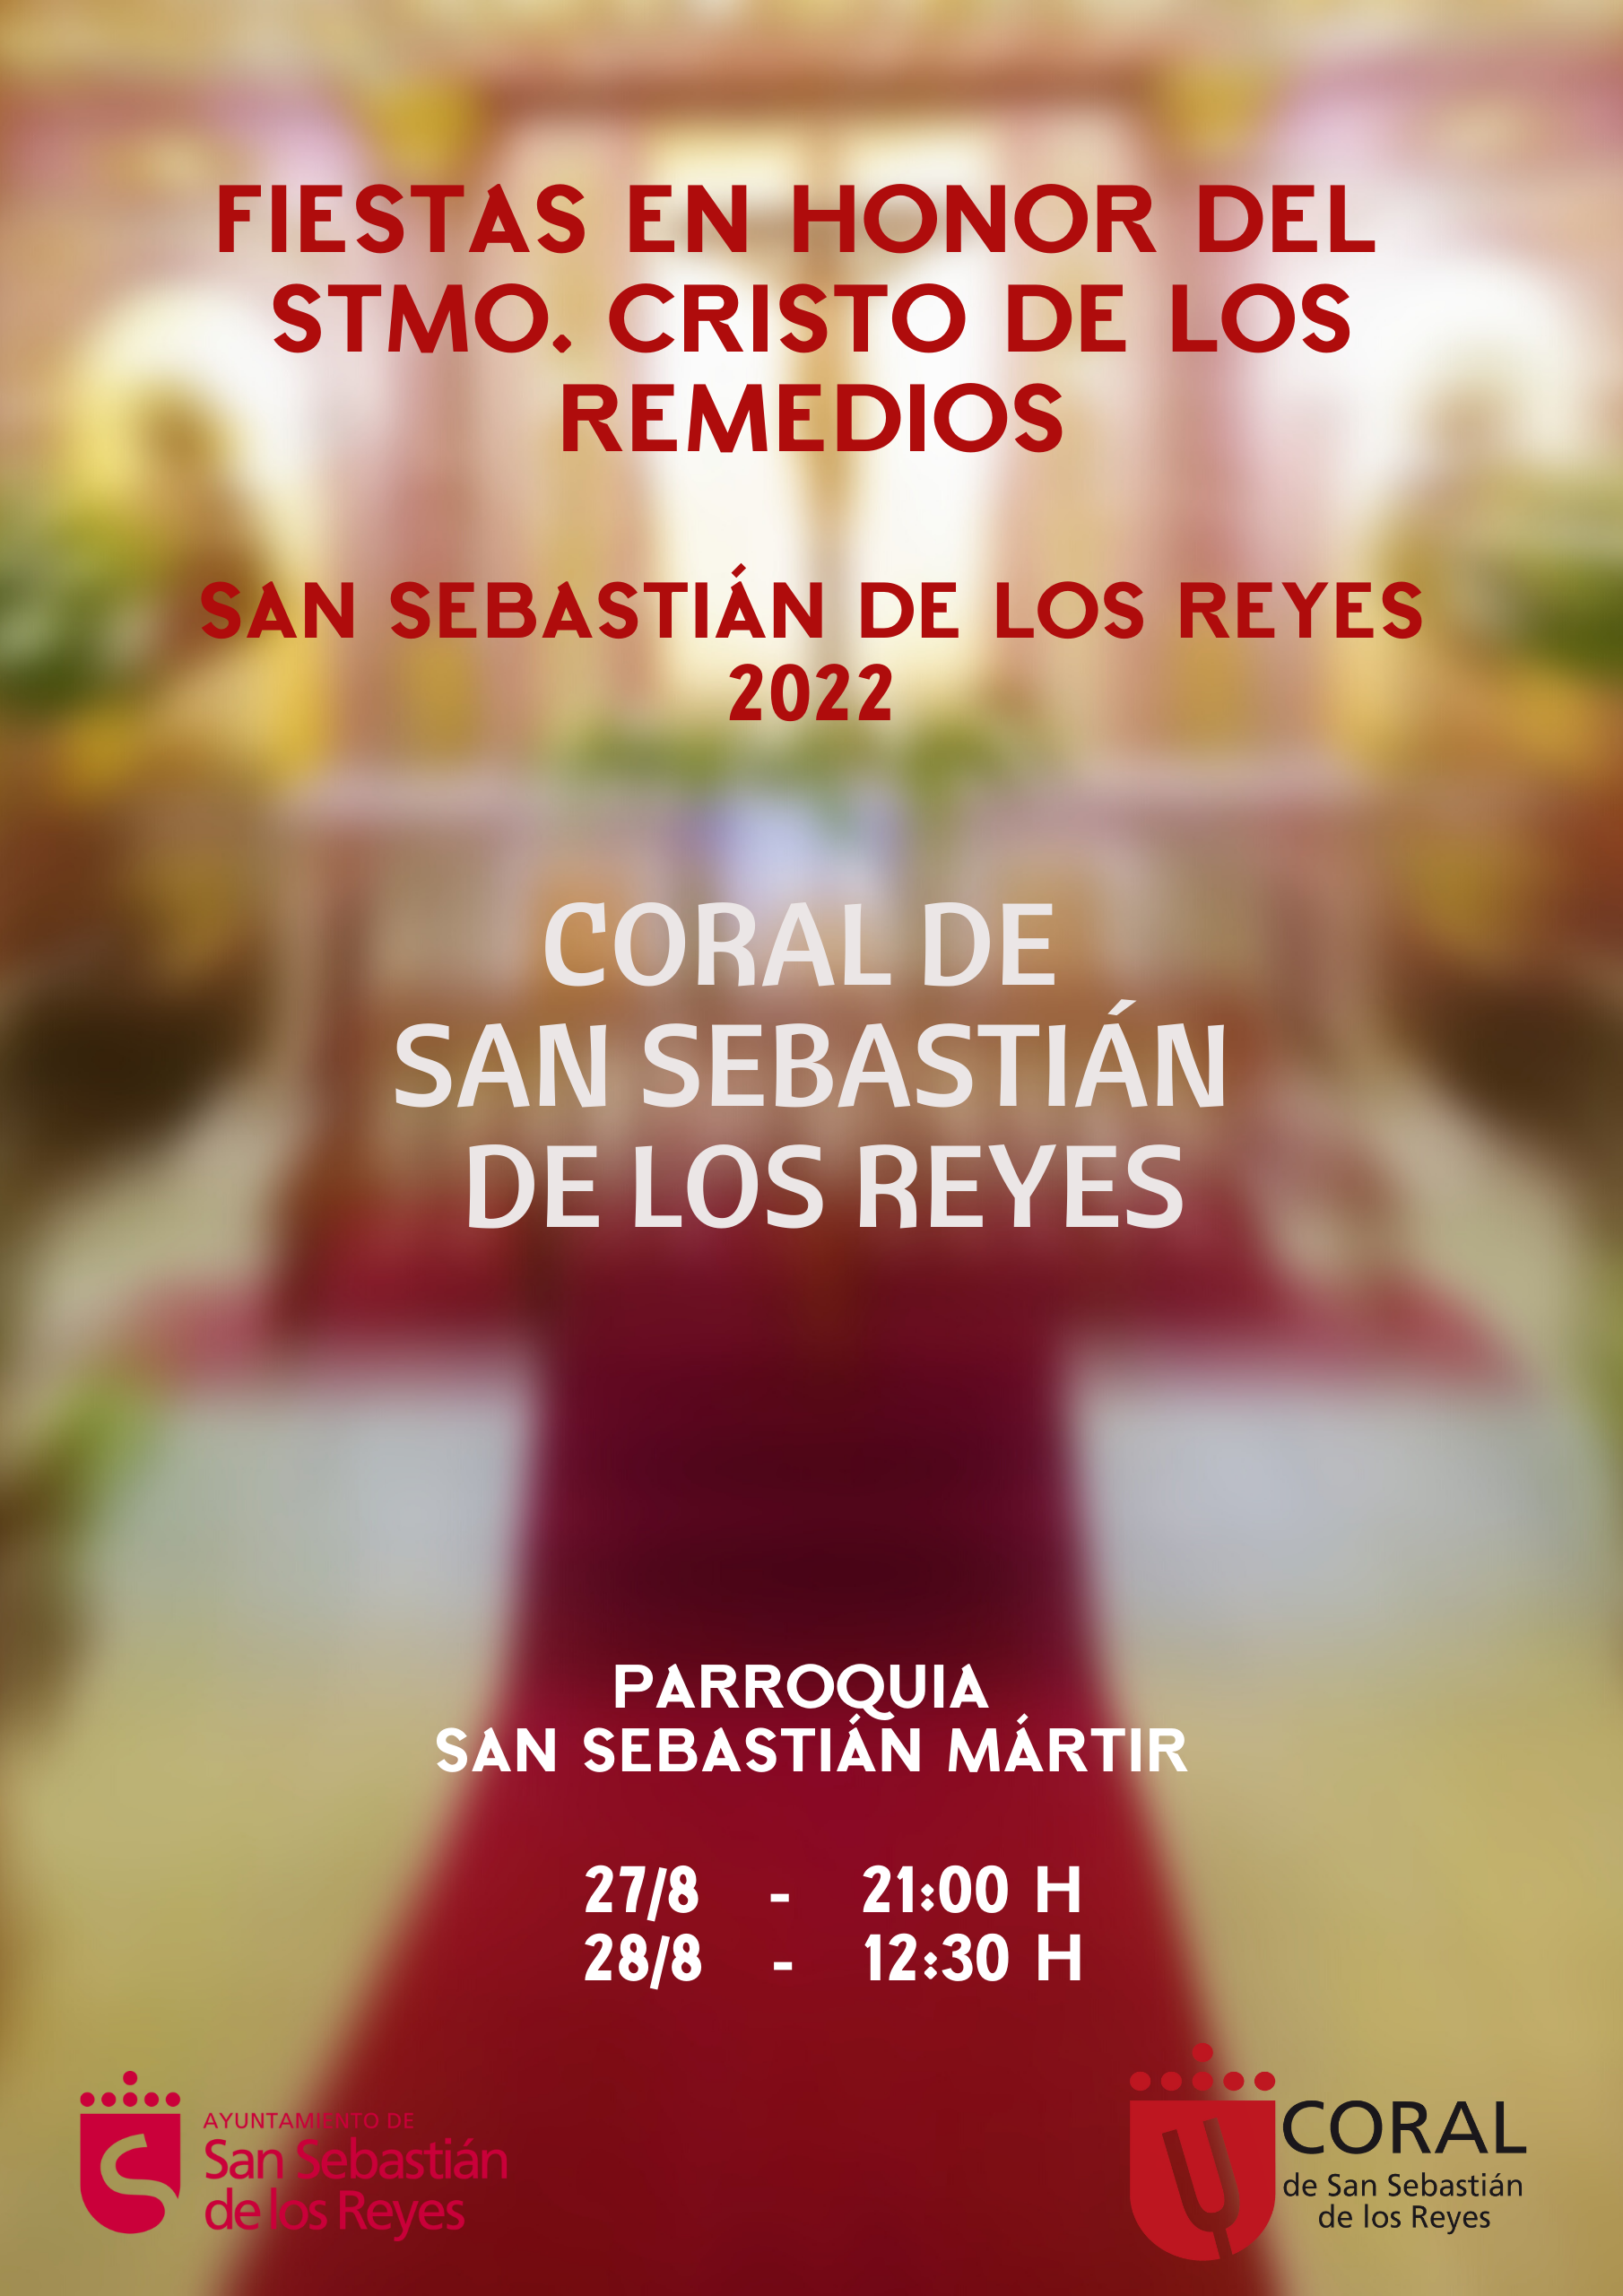 Semana en honor al Stmo. Cristo de los Remedios. San Sebastián de los Reyes 2022